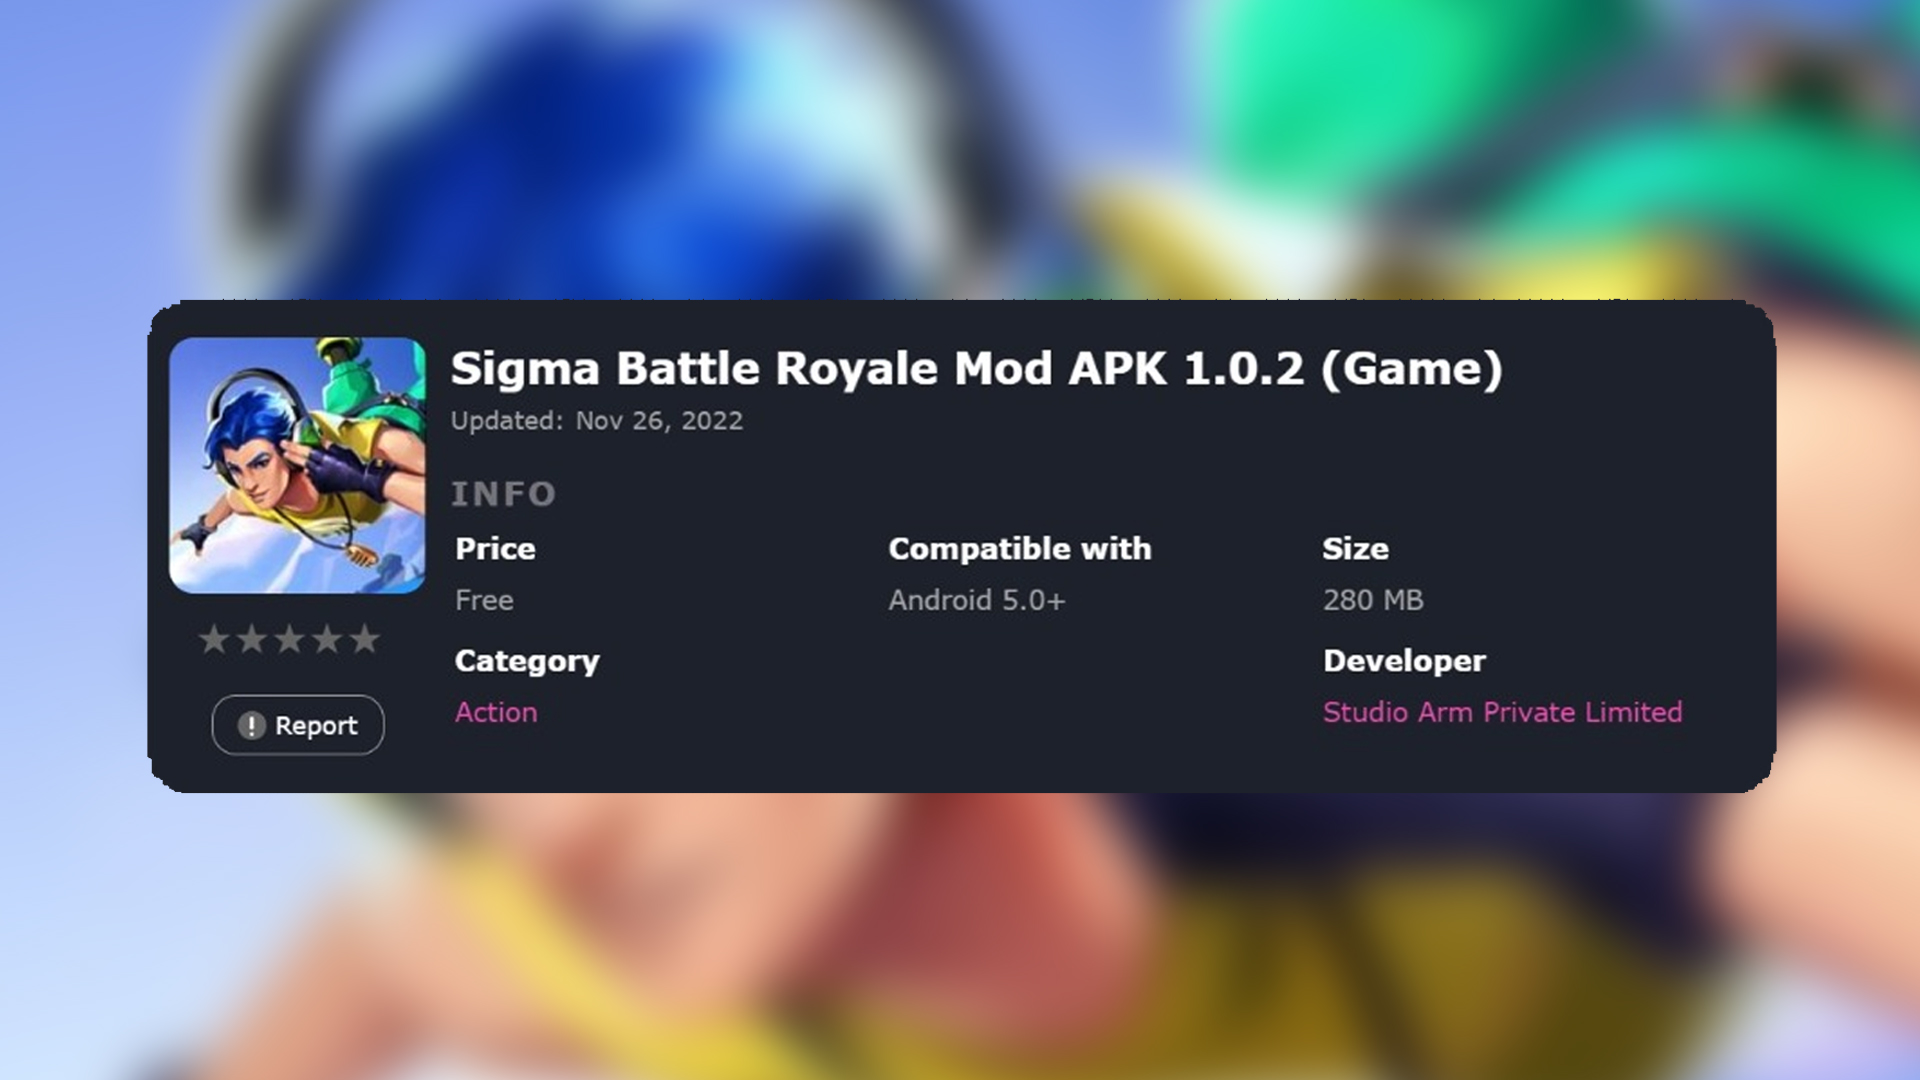 Game Sigma Battle Royale v1.0.2 APK Original 280 MB Dirilis, Begini Cara Download dan Instalnya - fin.co.id - Fajar Indonesia Network